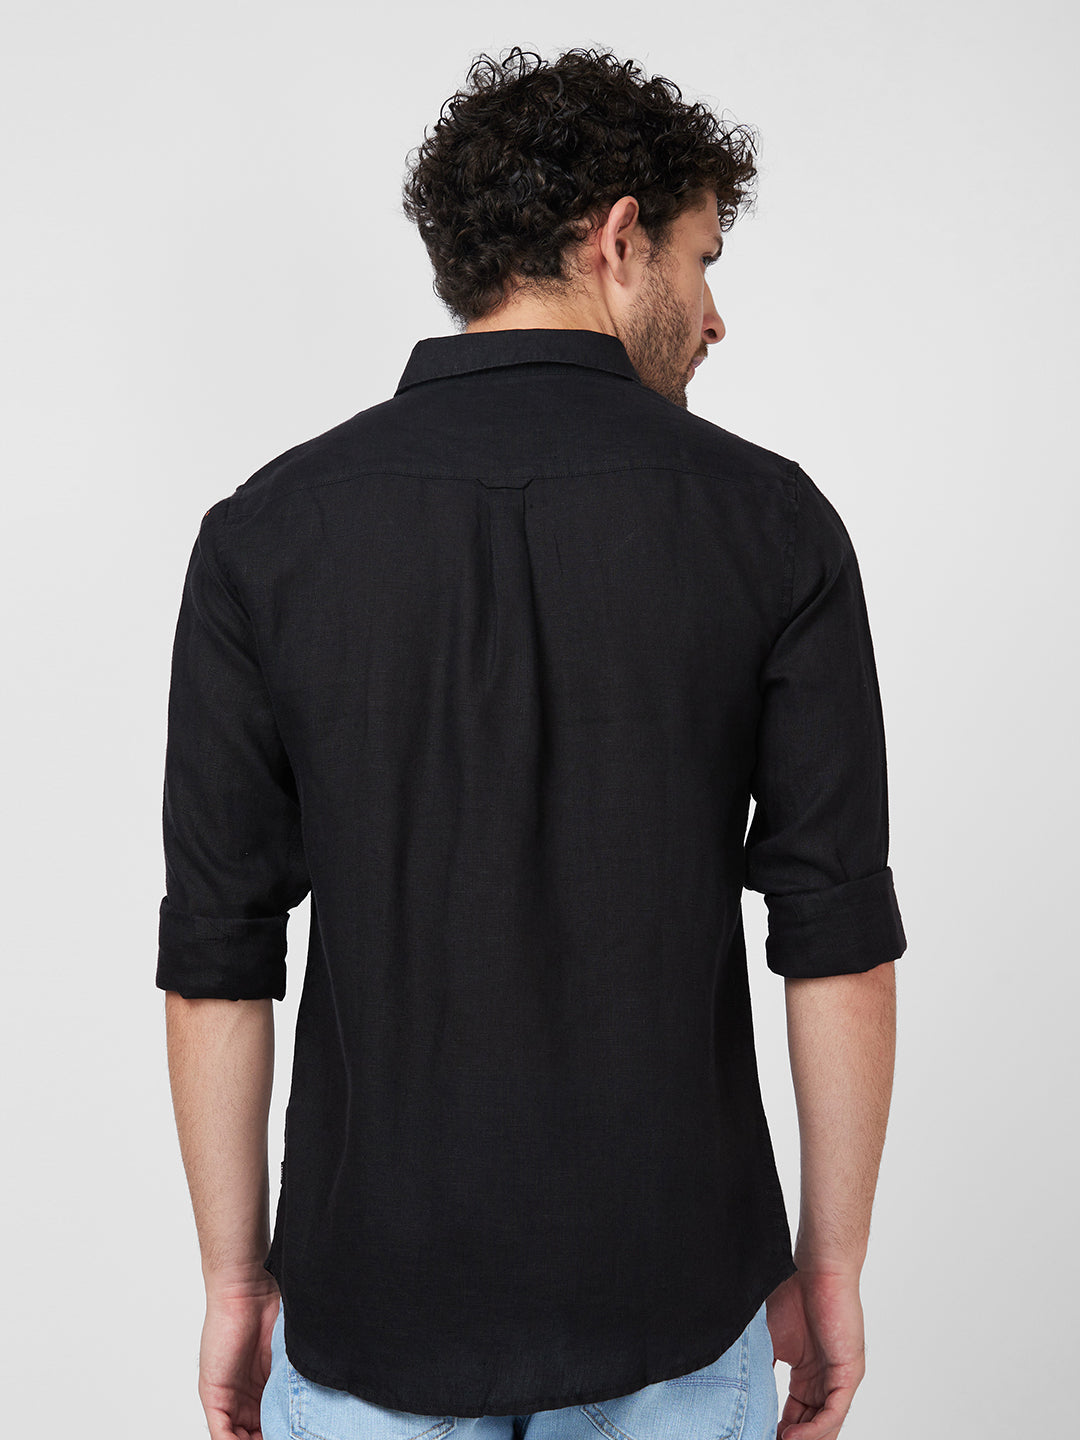 Spykar Full Sleeve Solid Black Shirt For Men